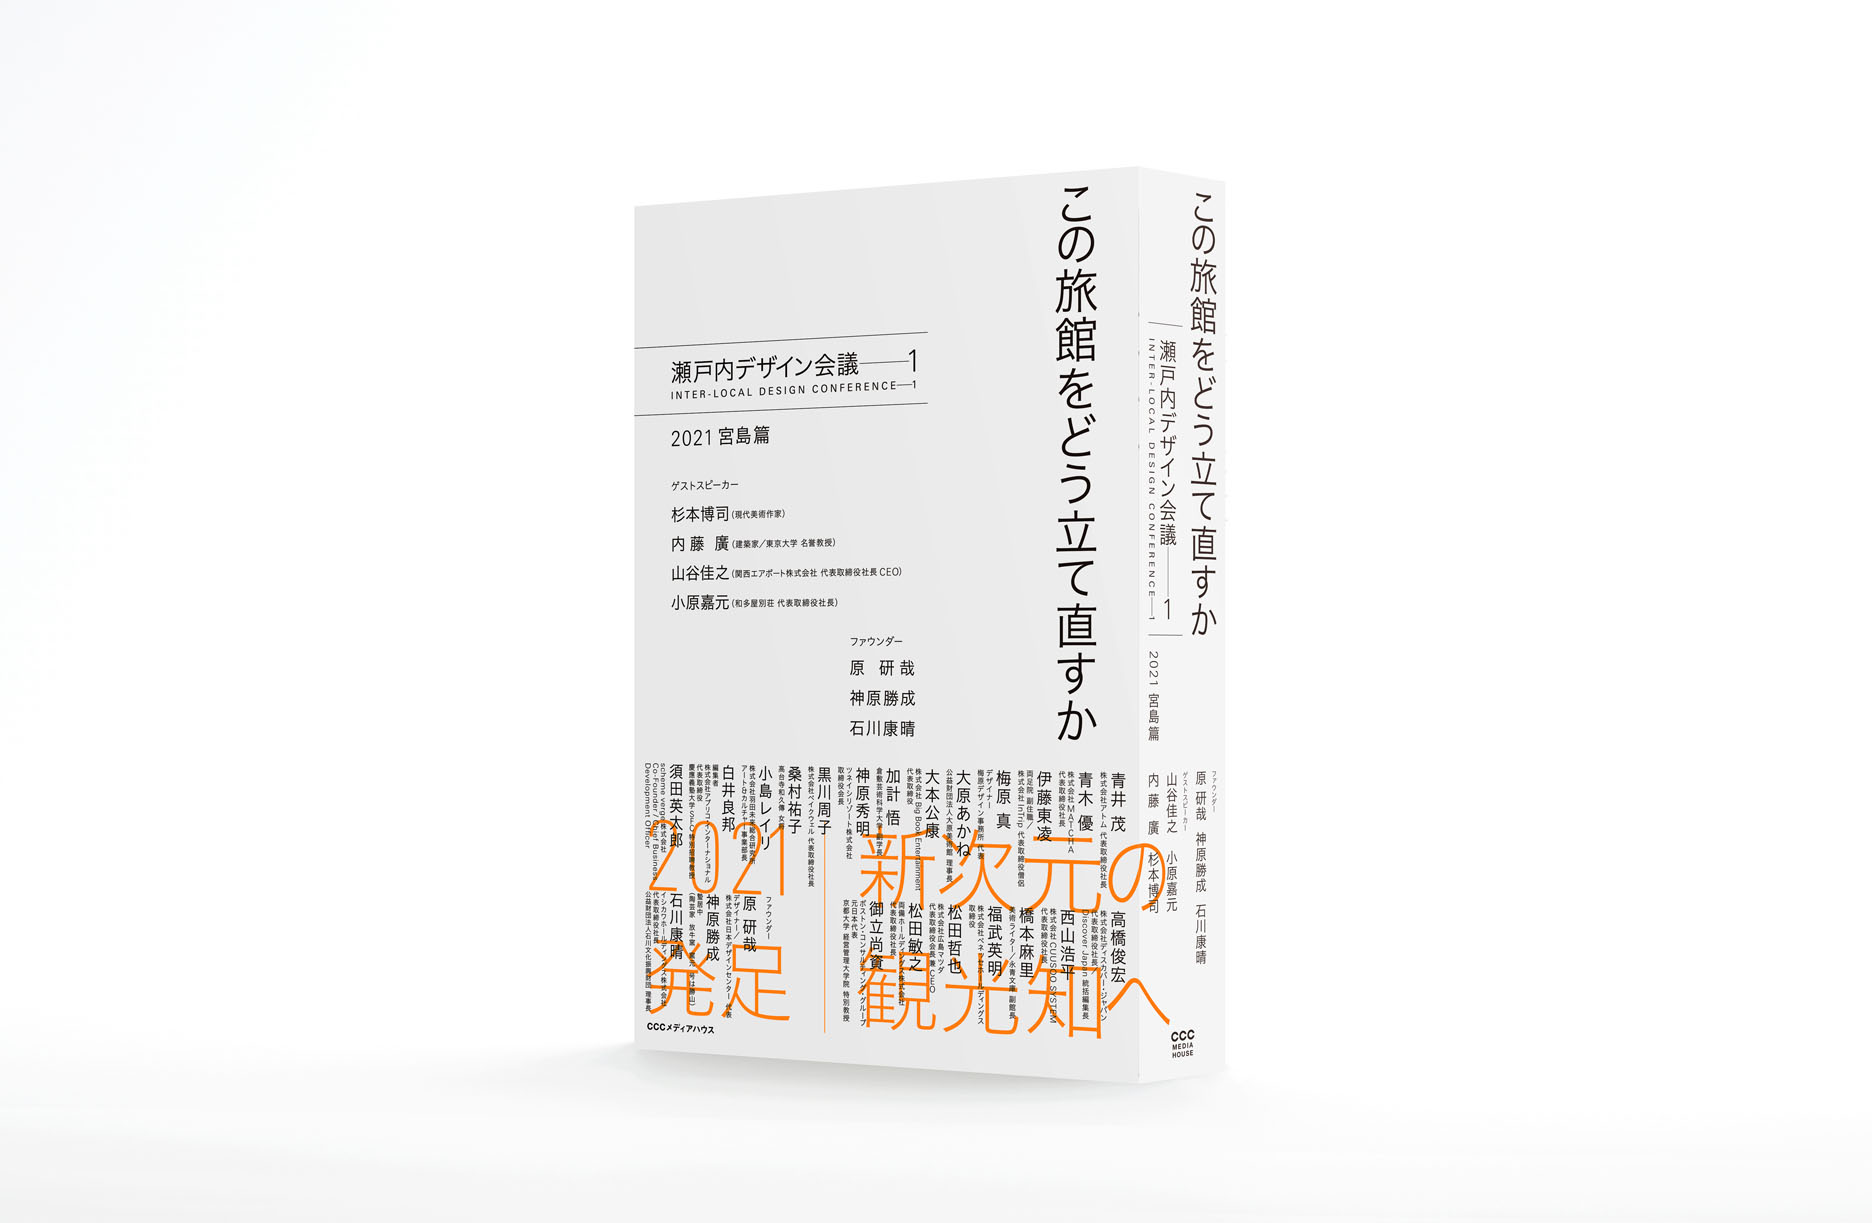 書籍『この旅館をどう立て直すか 瀬戸内デザイン会議−1 2021 宮島篇』発売